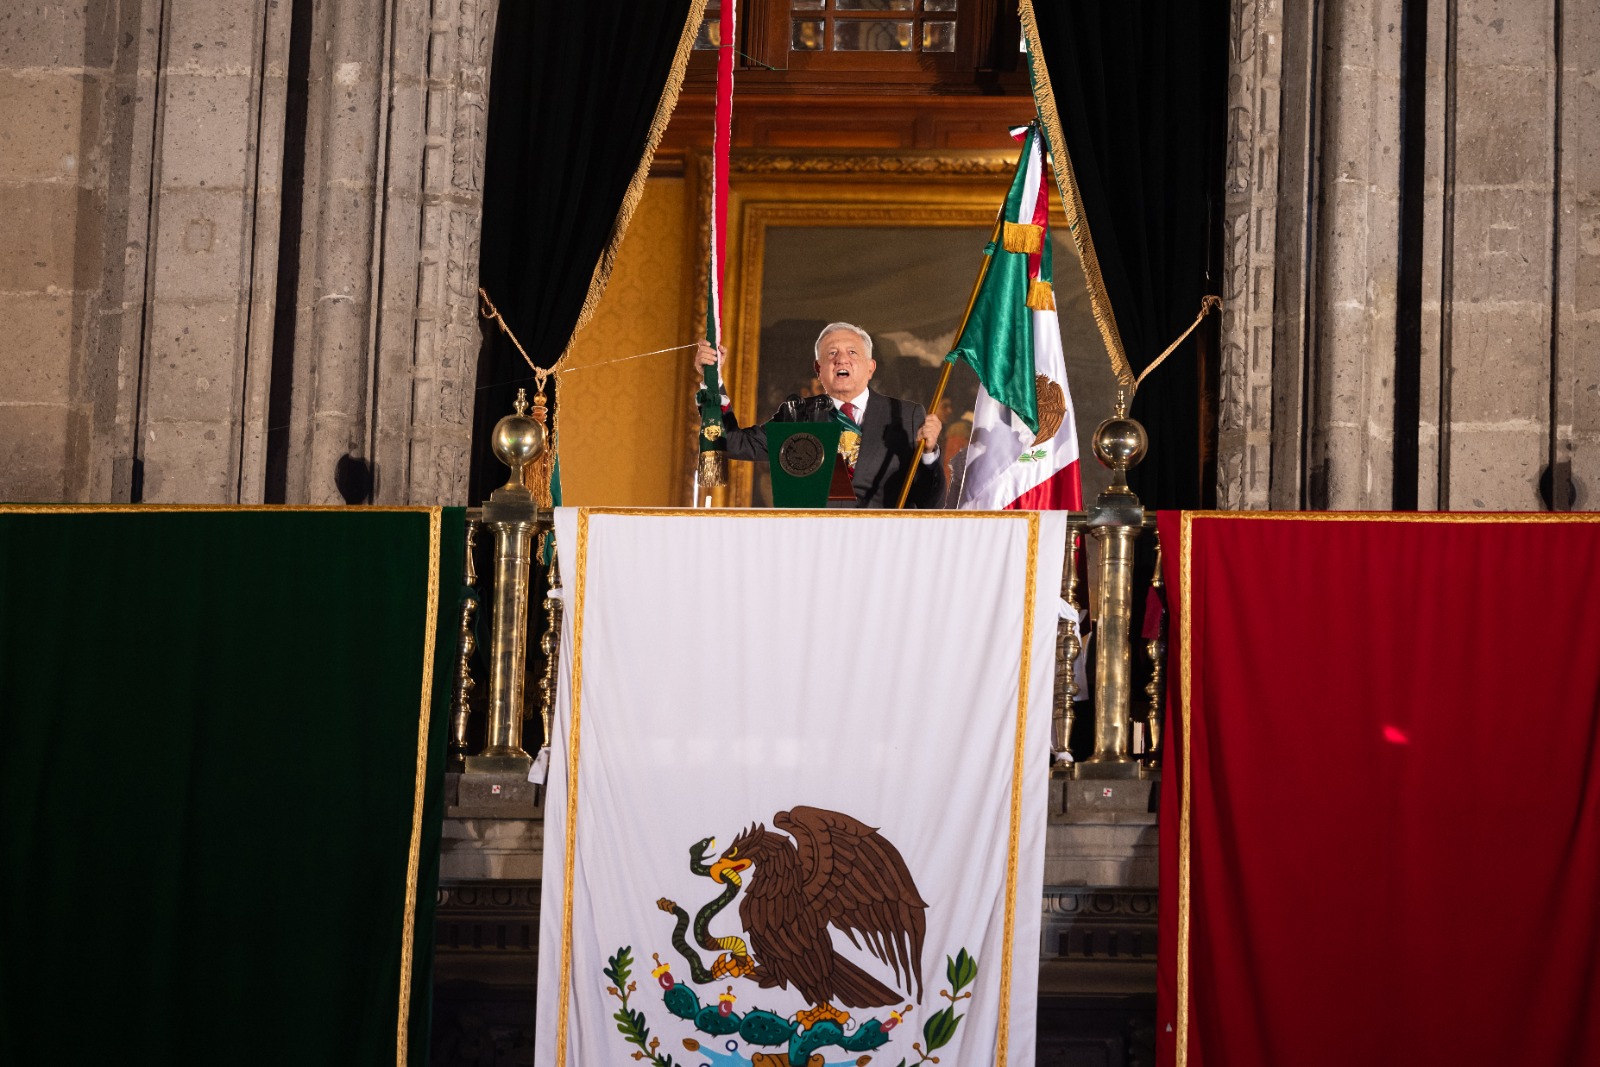 ¡Qué muera la discriminación! ¡Qué viva el amor! ¡Qué vivan nuestros hermanos migrantes!: López Obrador